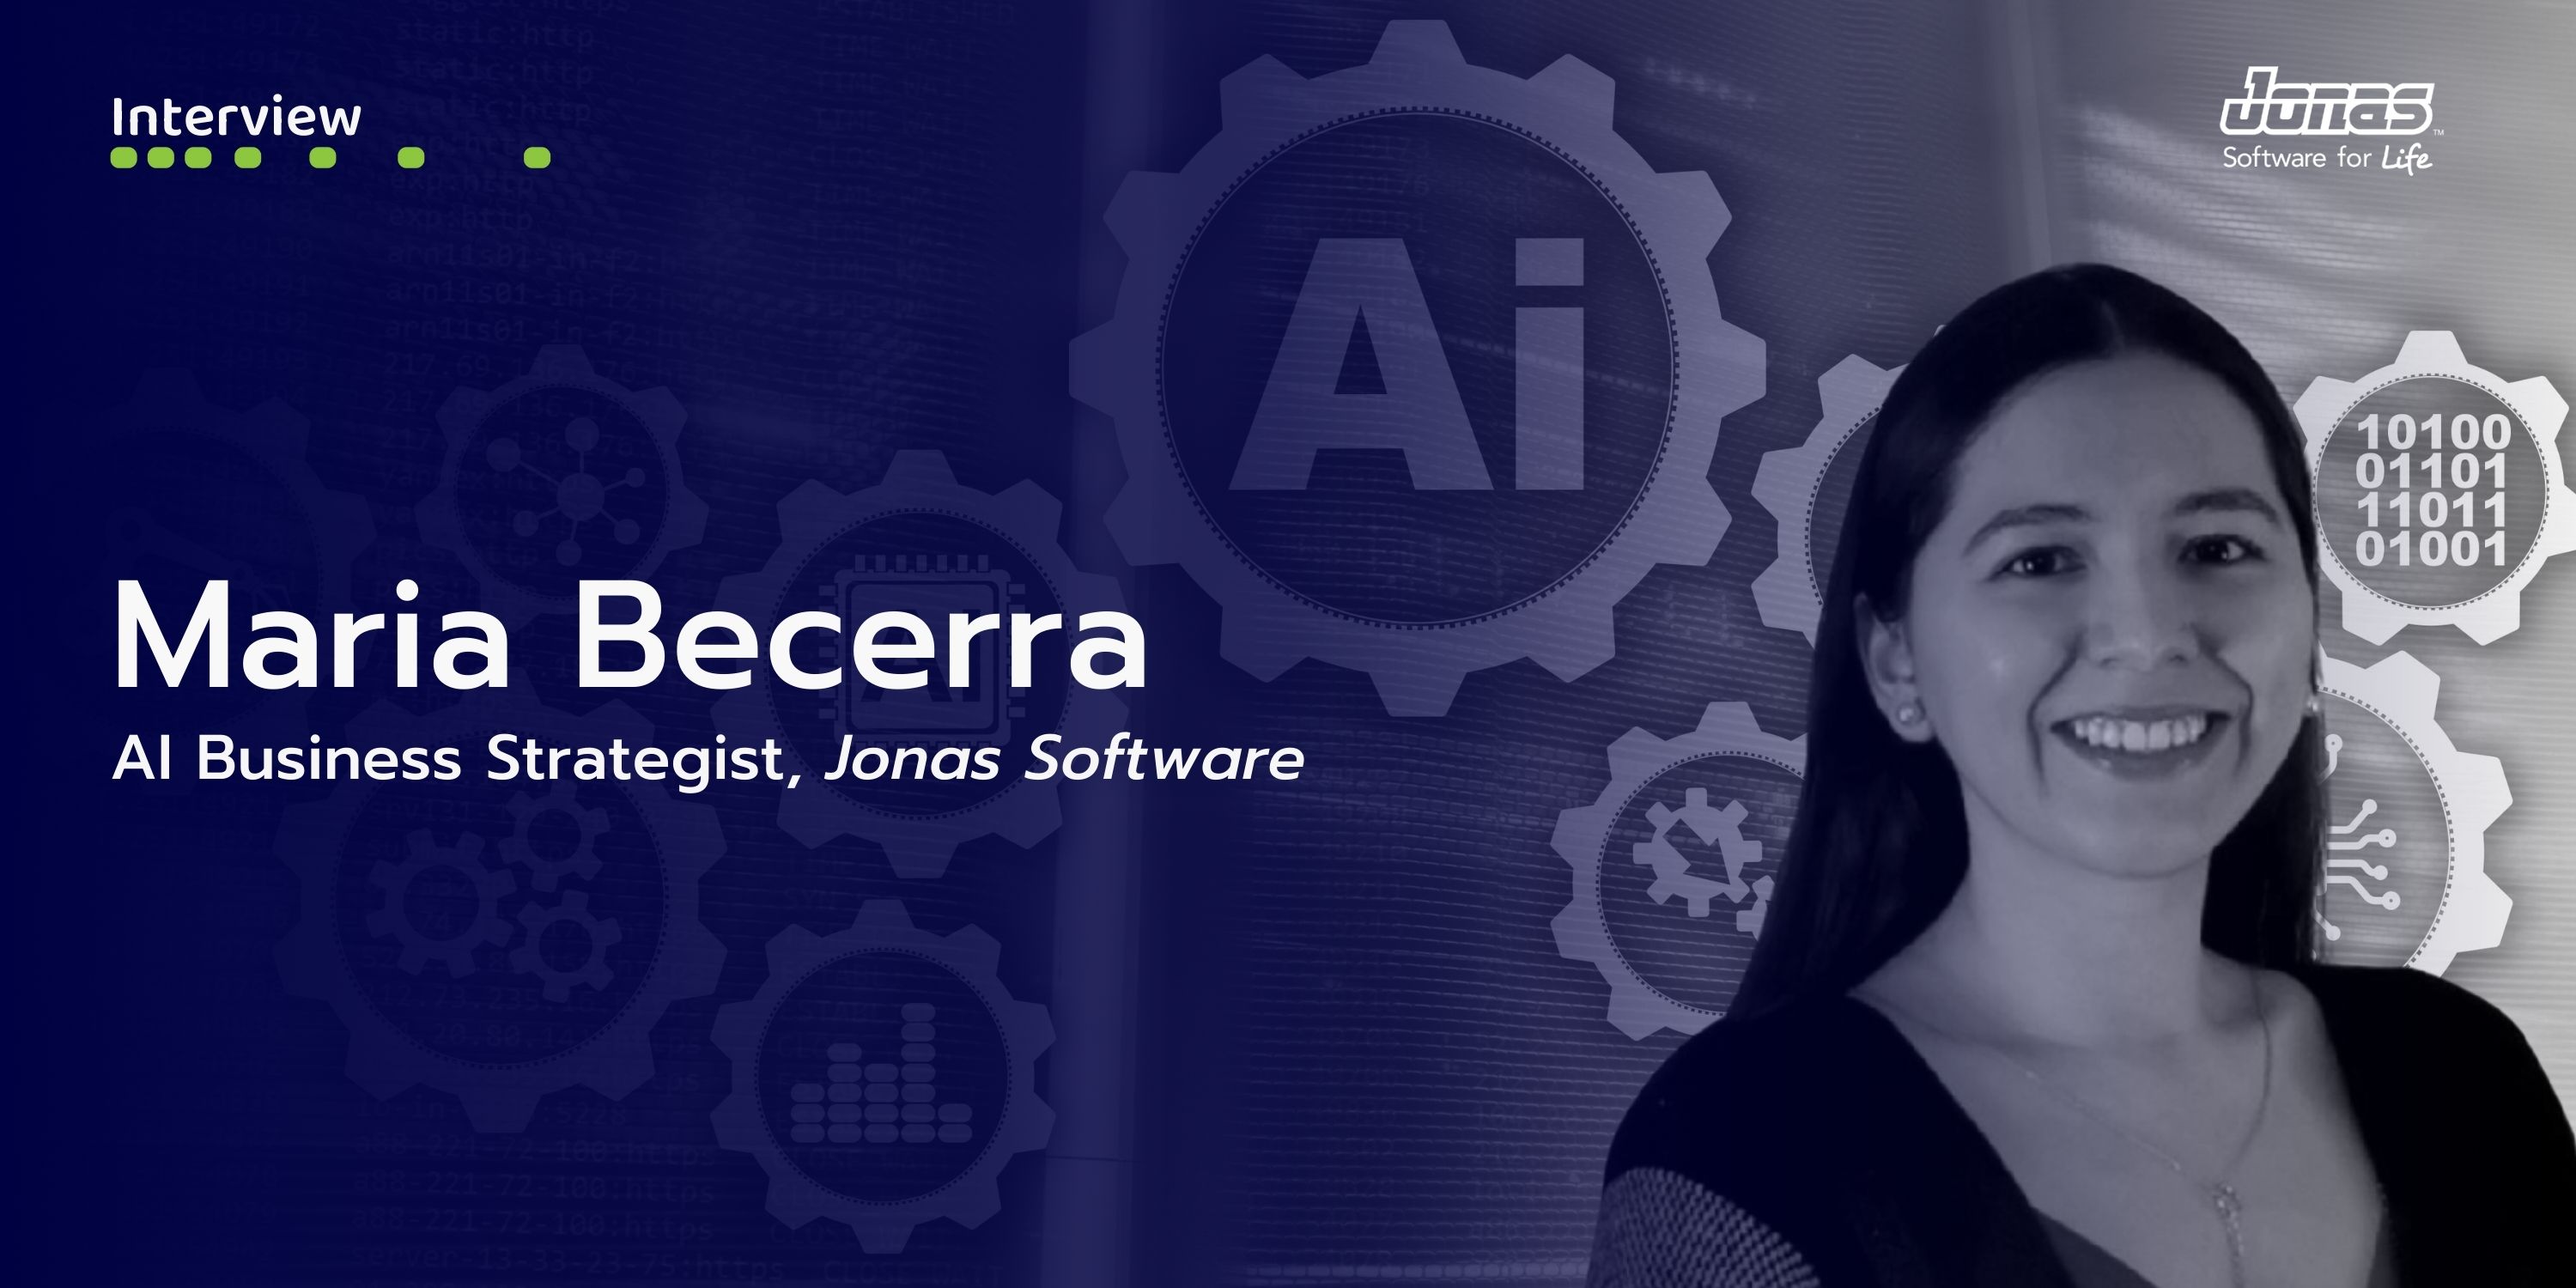 Maria Becerra, AI Business Strategist, Jonas Software